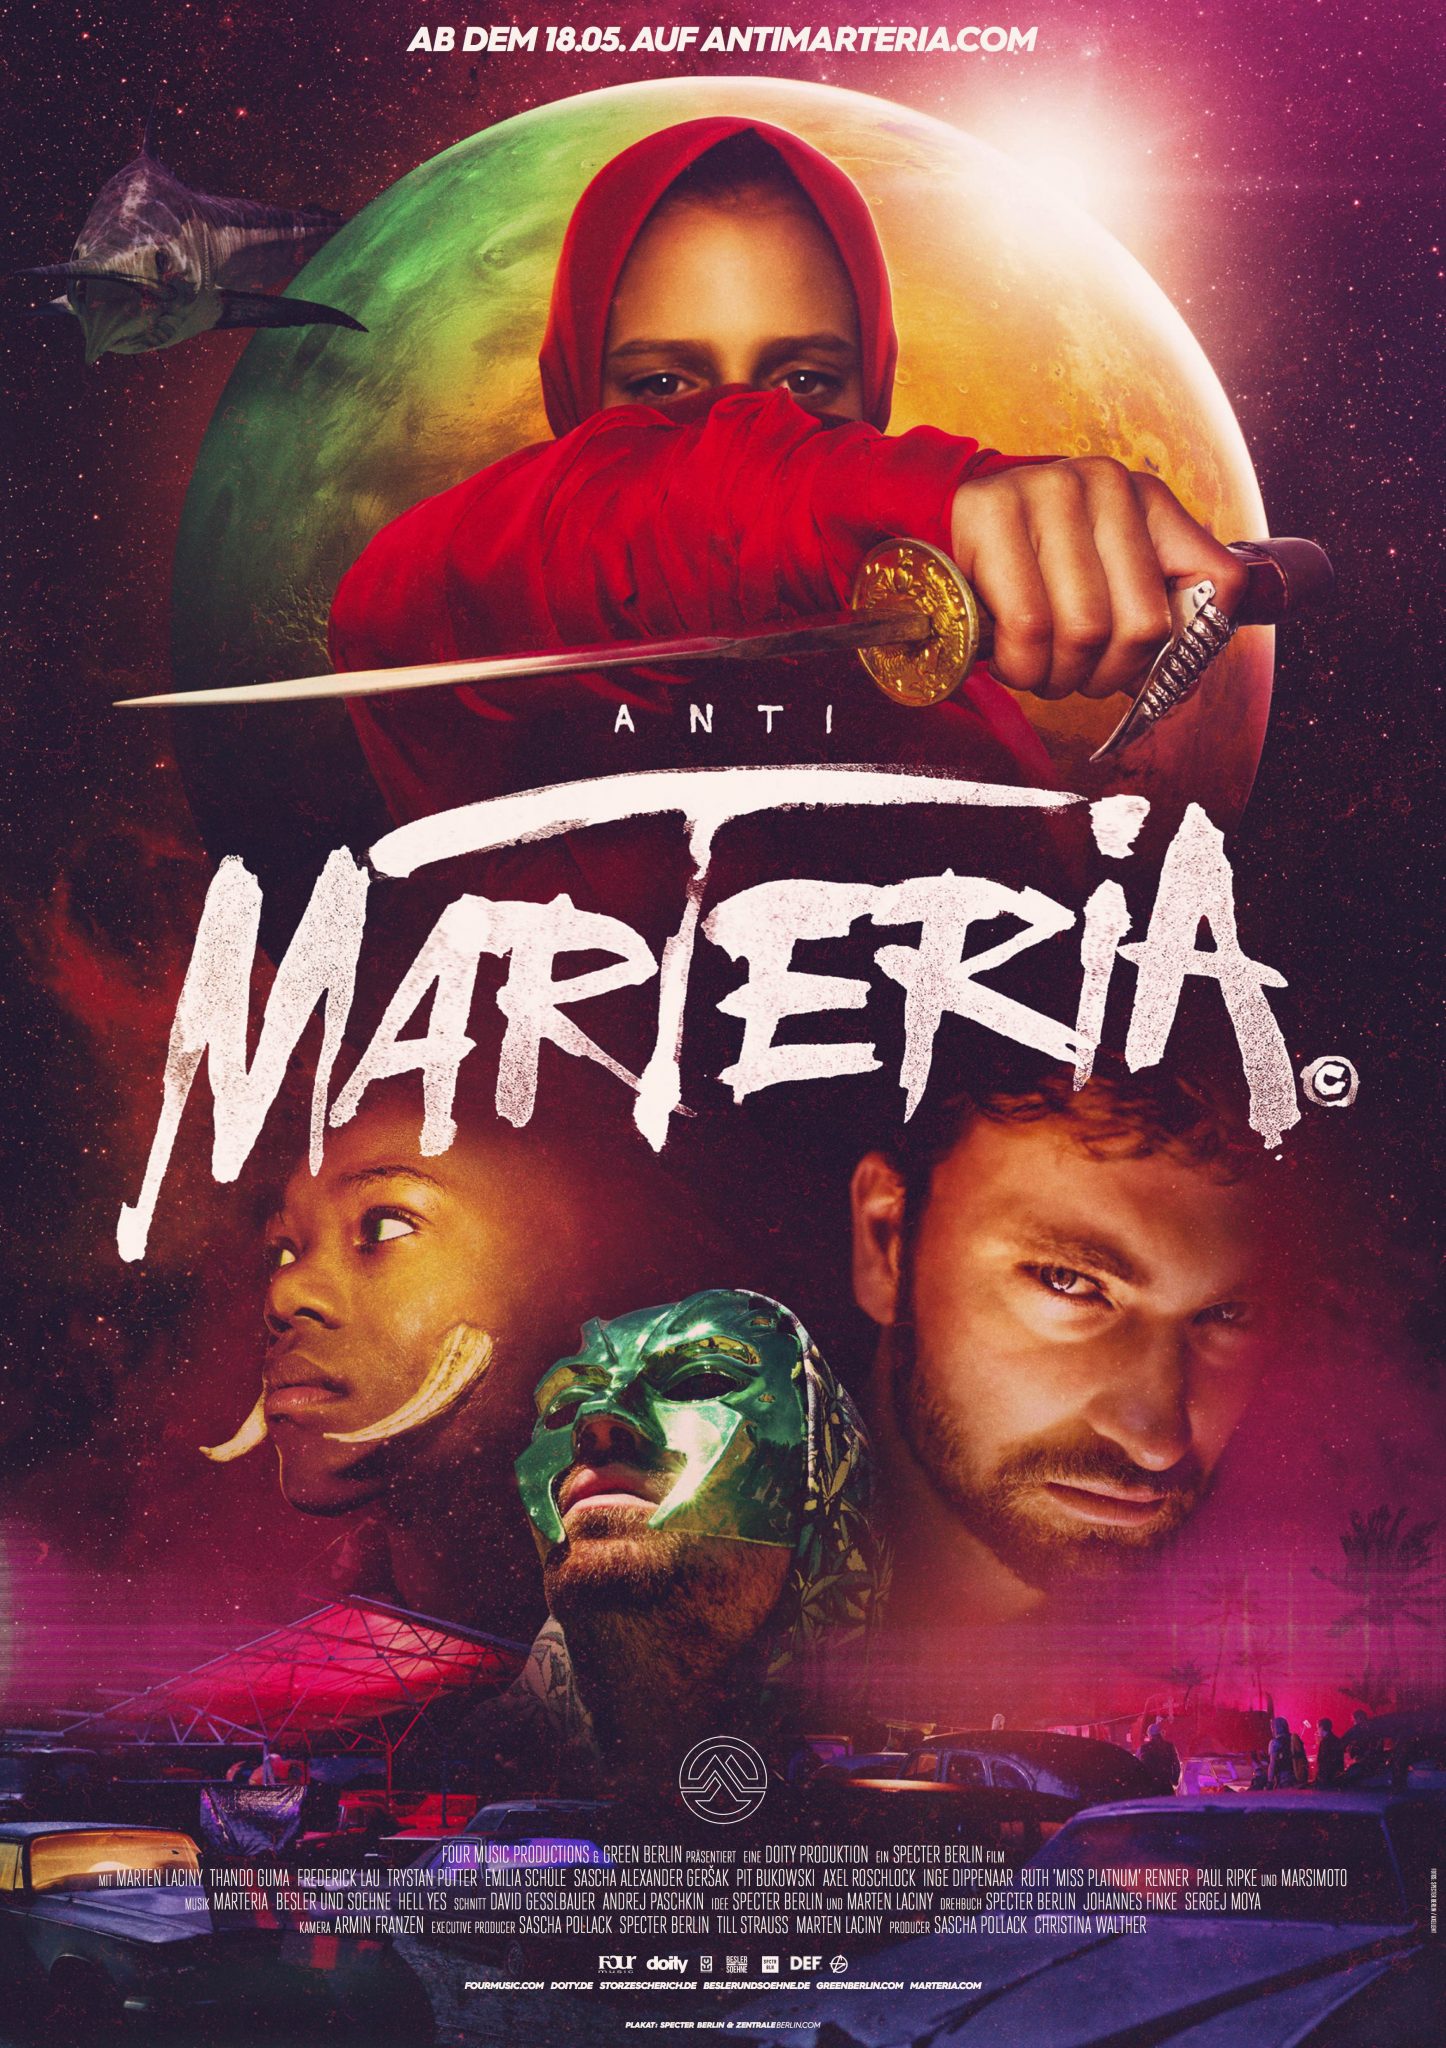 MARTERIA - ANTIMARTERIA FILM